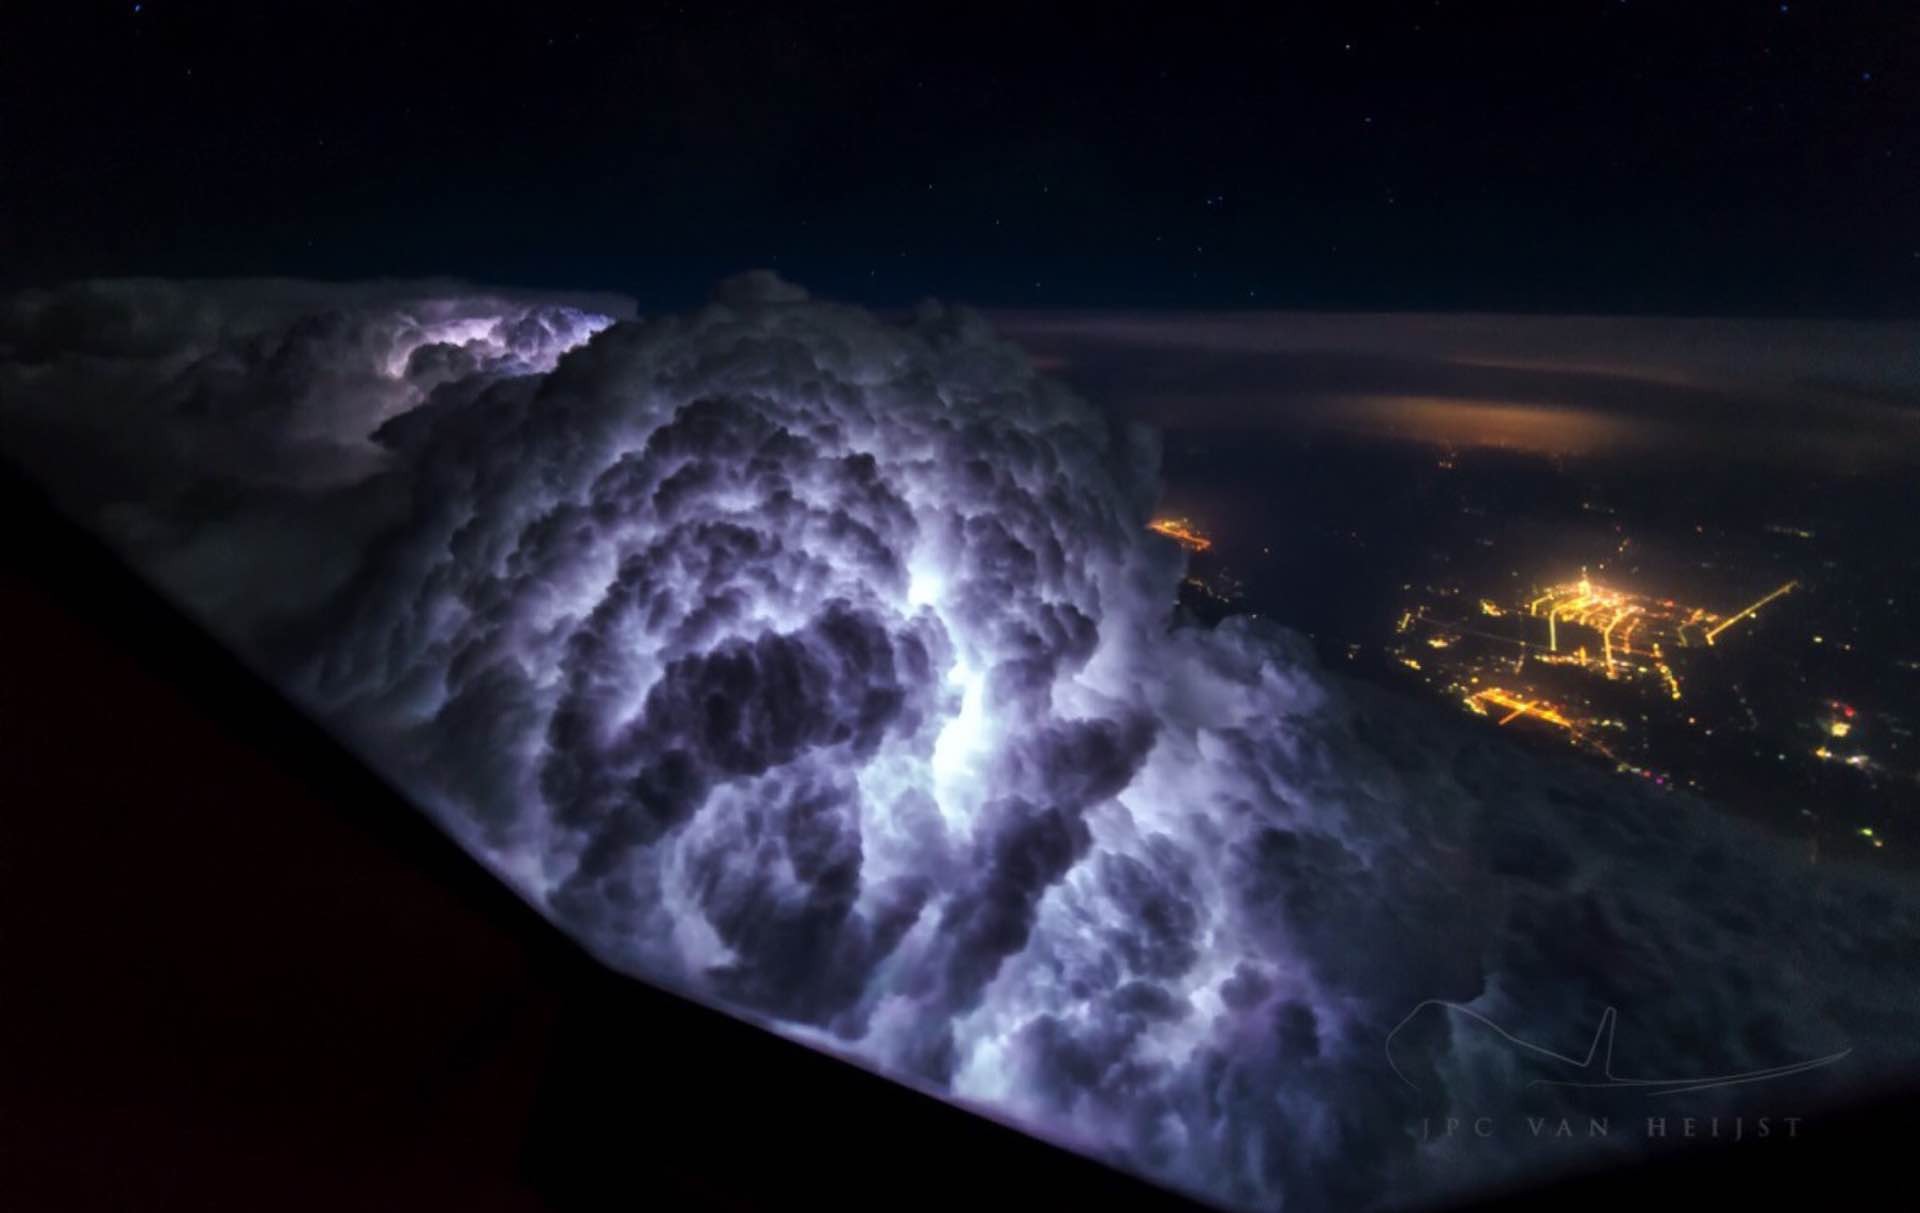 Photo: "Rapidly Growing Thunderstorm" by Christiaan van Heijst